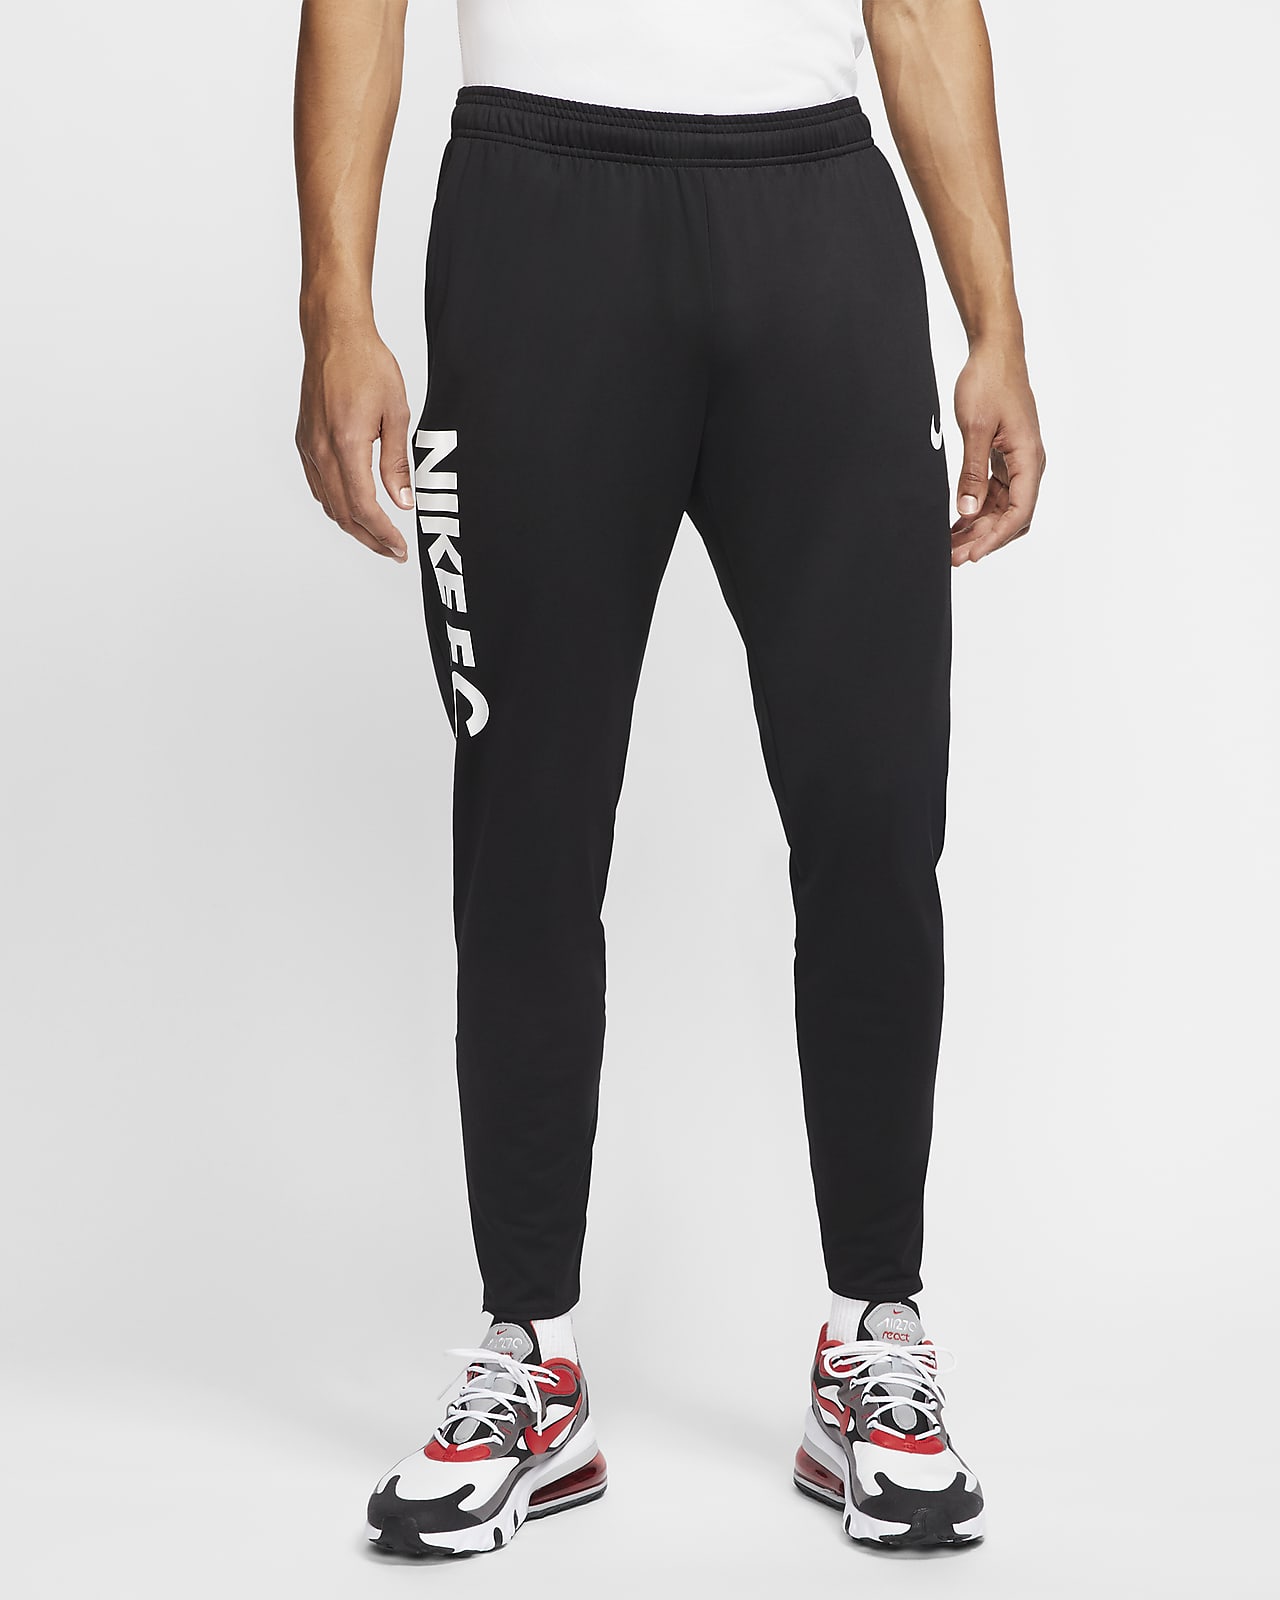 Pantalones de fútbol para hombre Nike F.C. Essential